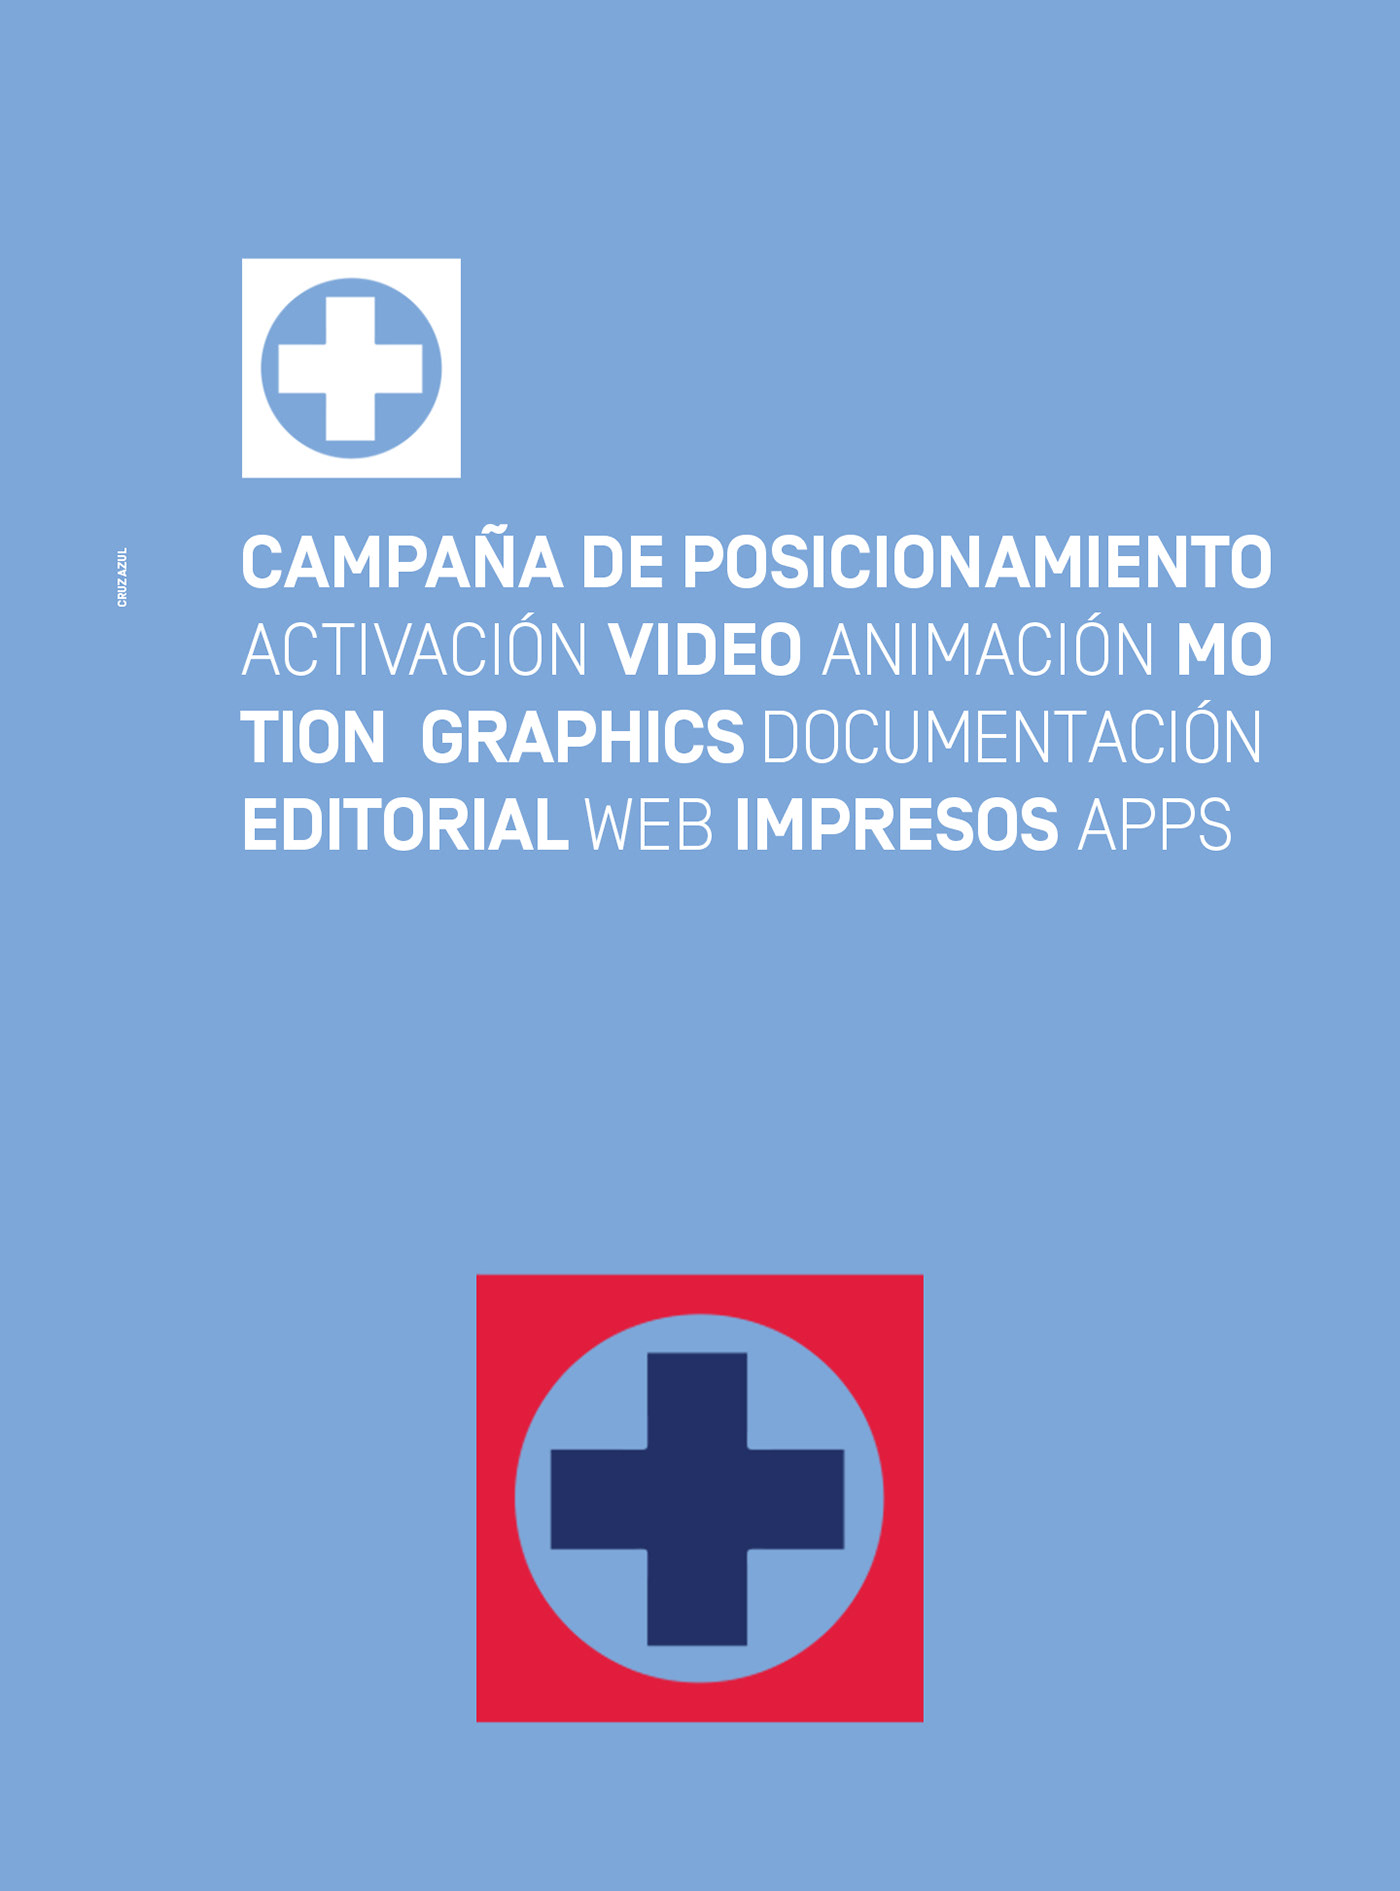 cruz azul Campaña posicionamiento video animacion motiongraphics Web editorial Documentación apps